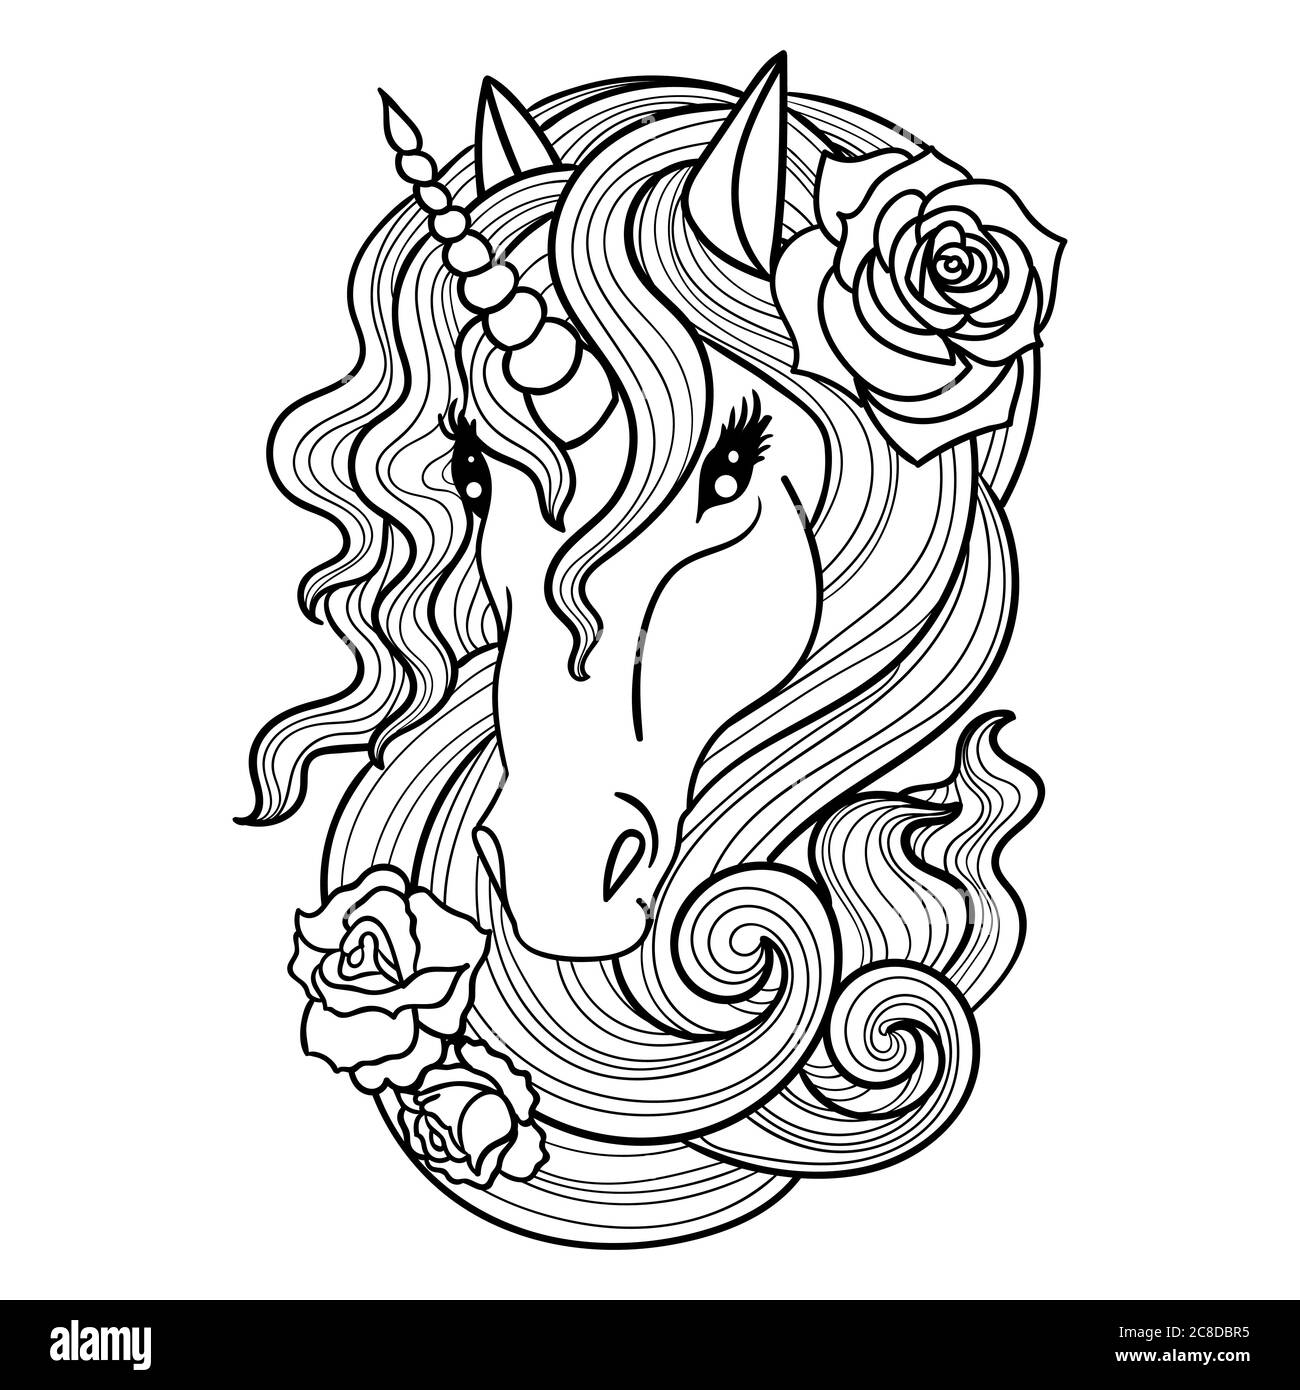 Testa di unicorno con rose nella cresta. Bianco e nero. Adatto per tatuaggi, libri da colorare, stampe, poster, cartoline e così via Illustrazione Vettoriale